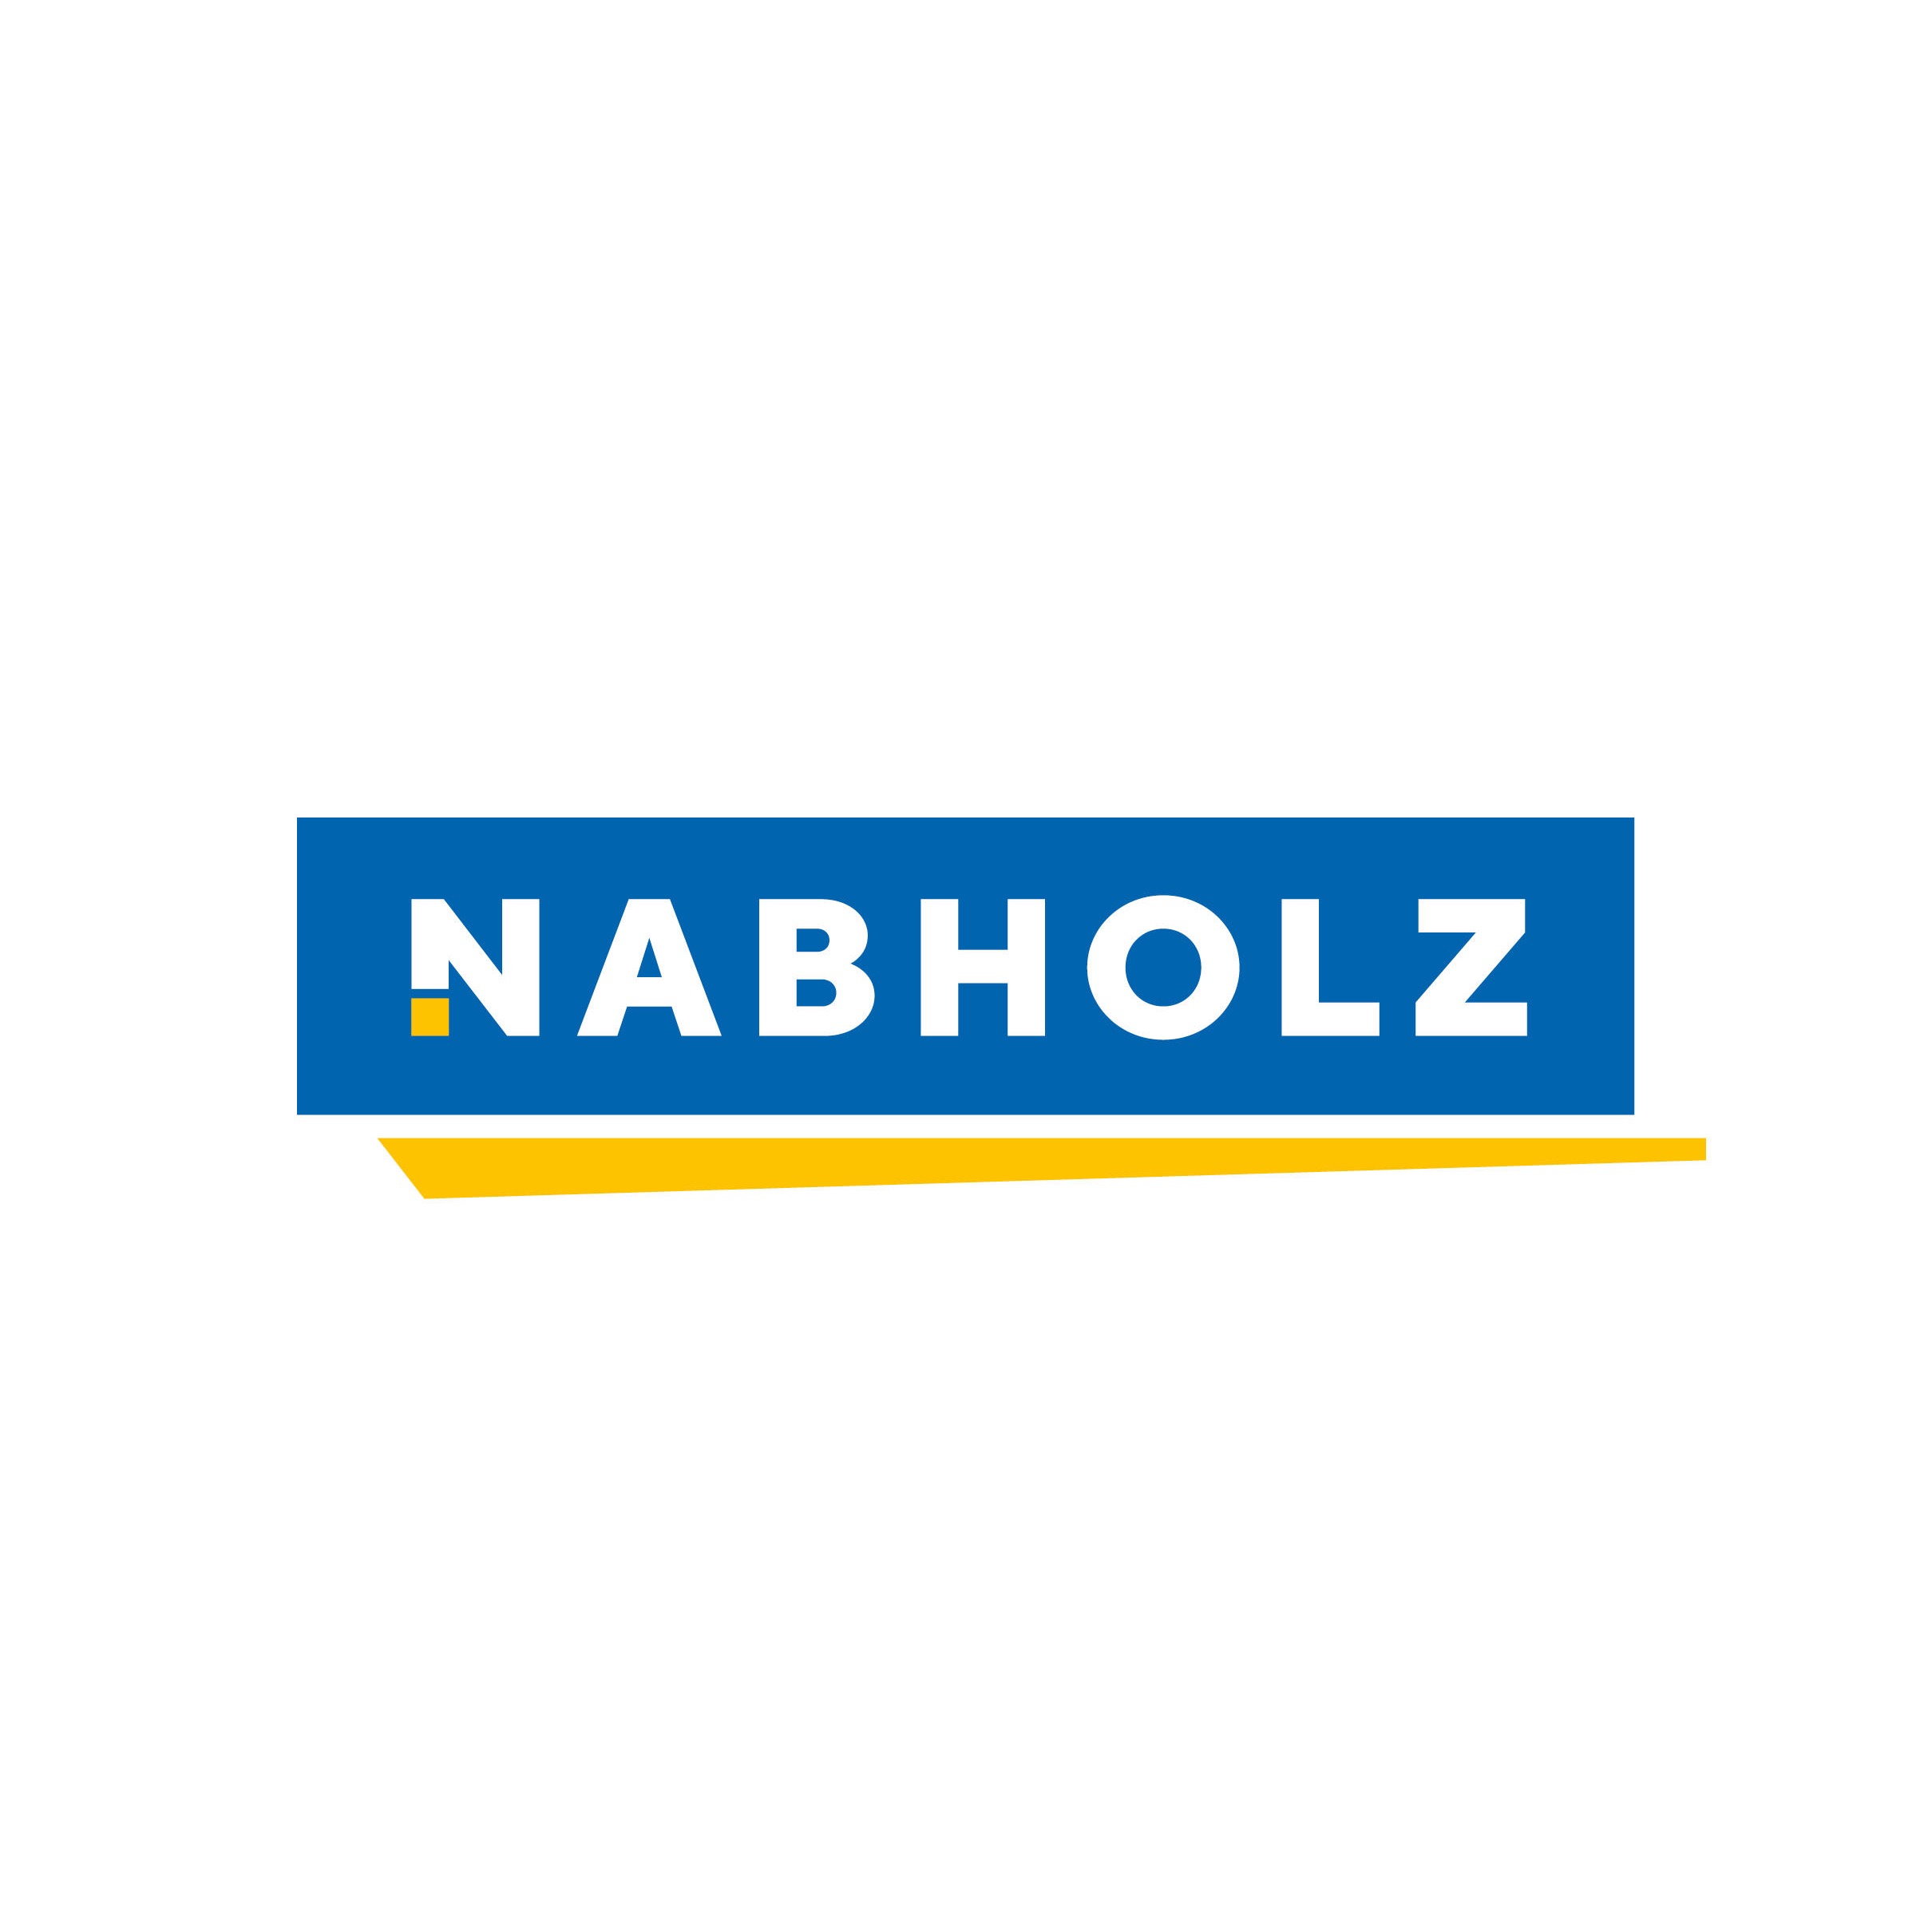 Heinrich Nabholz Autoreifen GmbH in Nürnberg - Logo